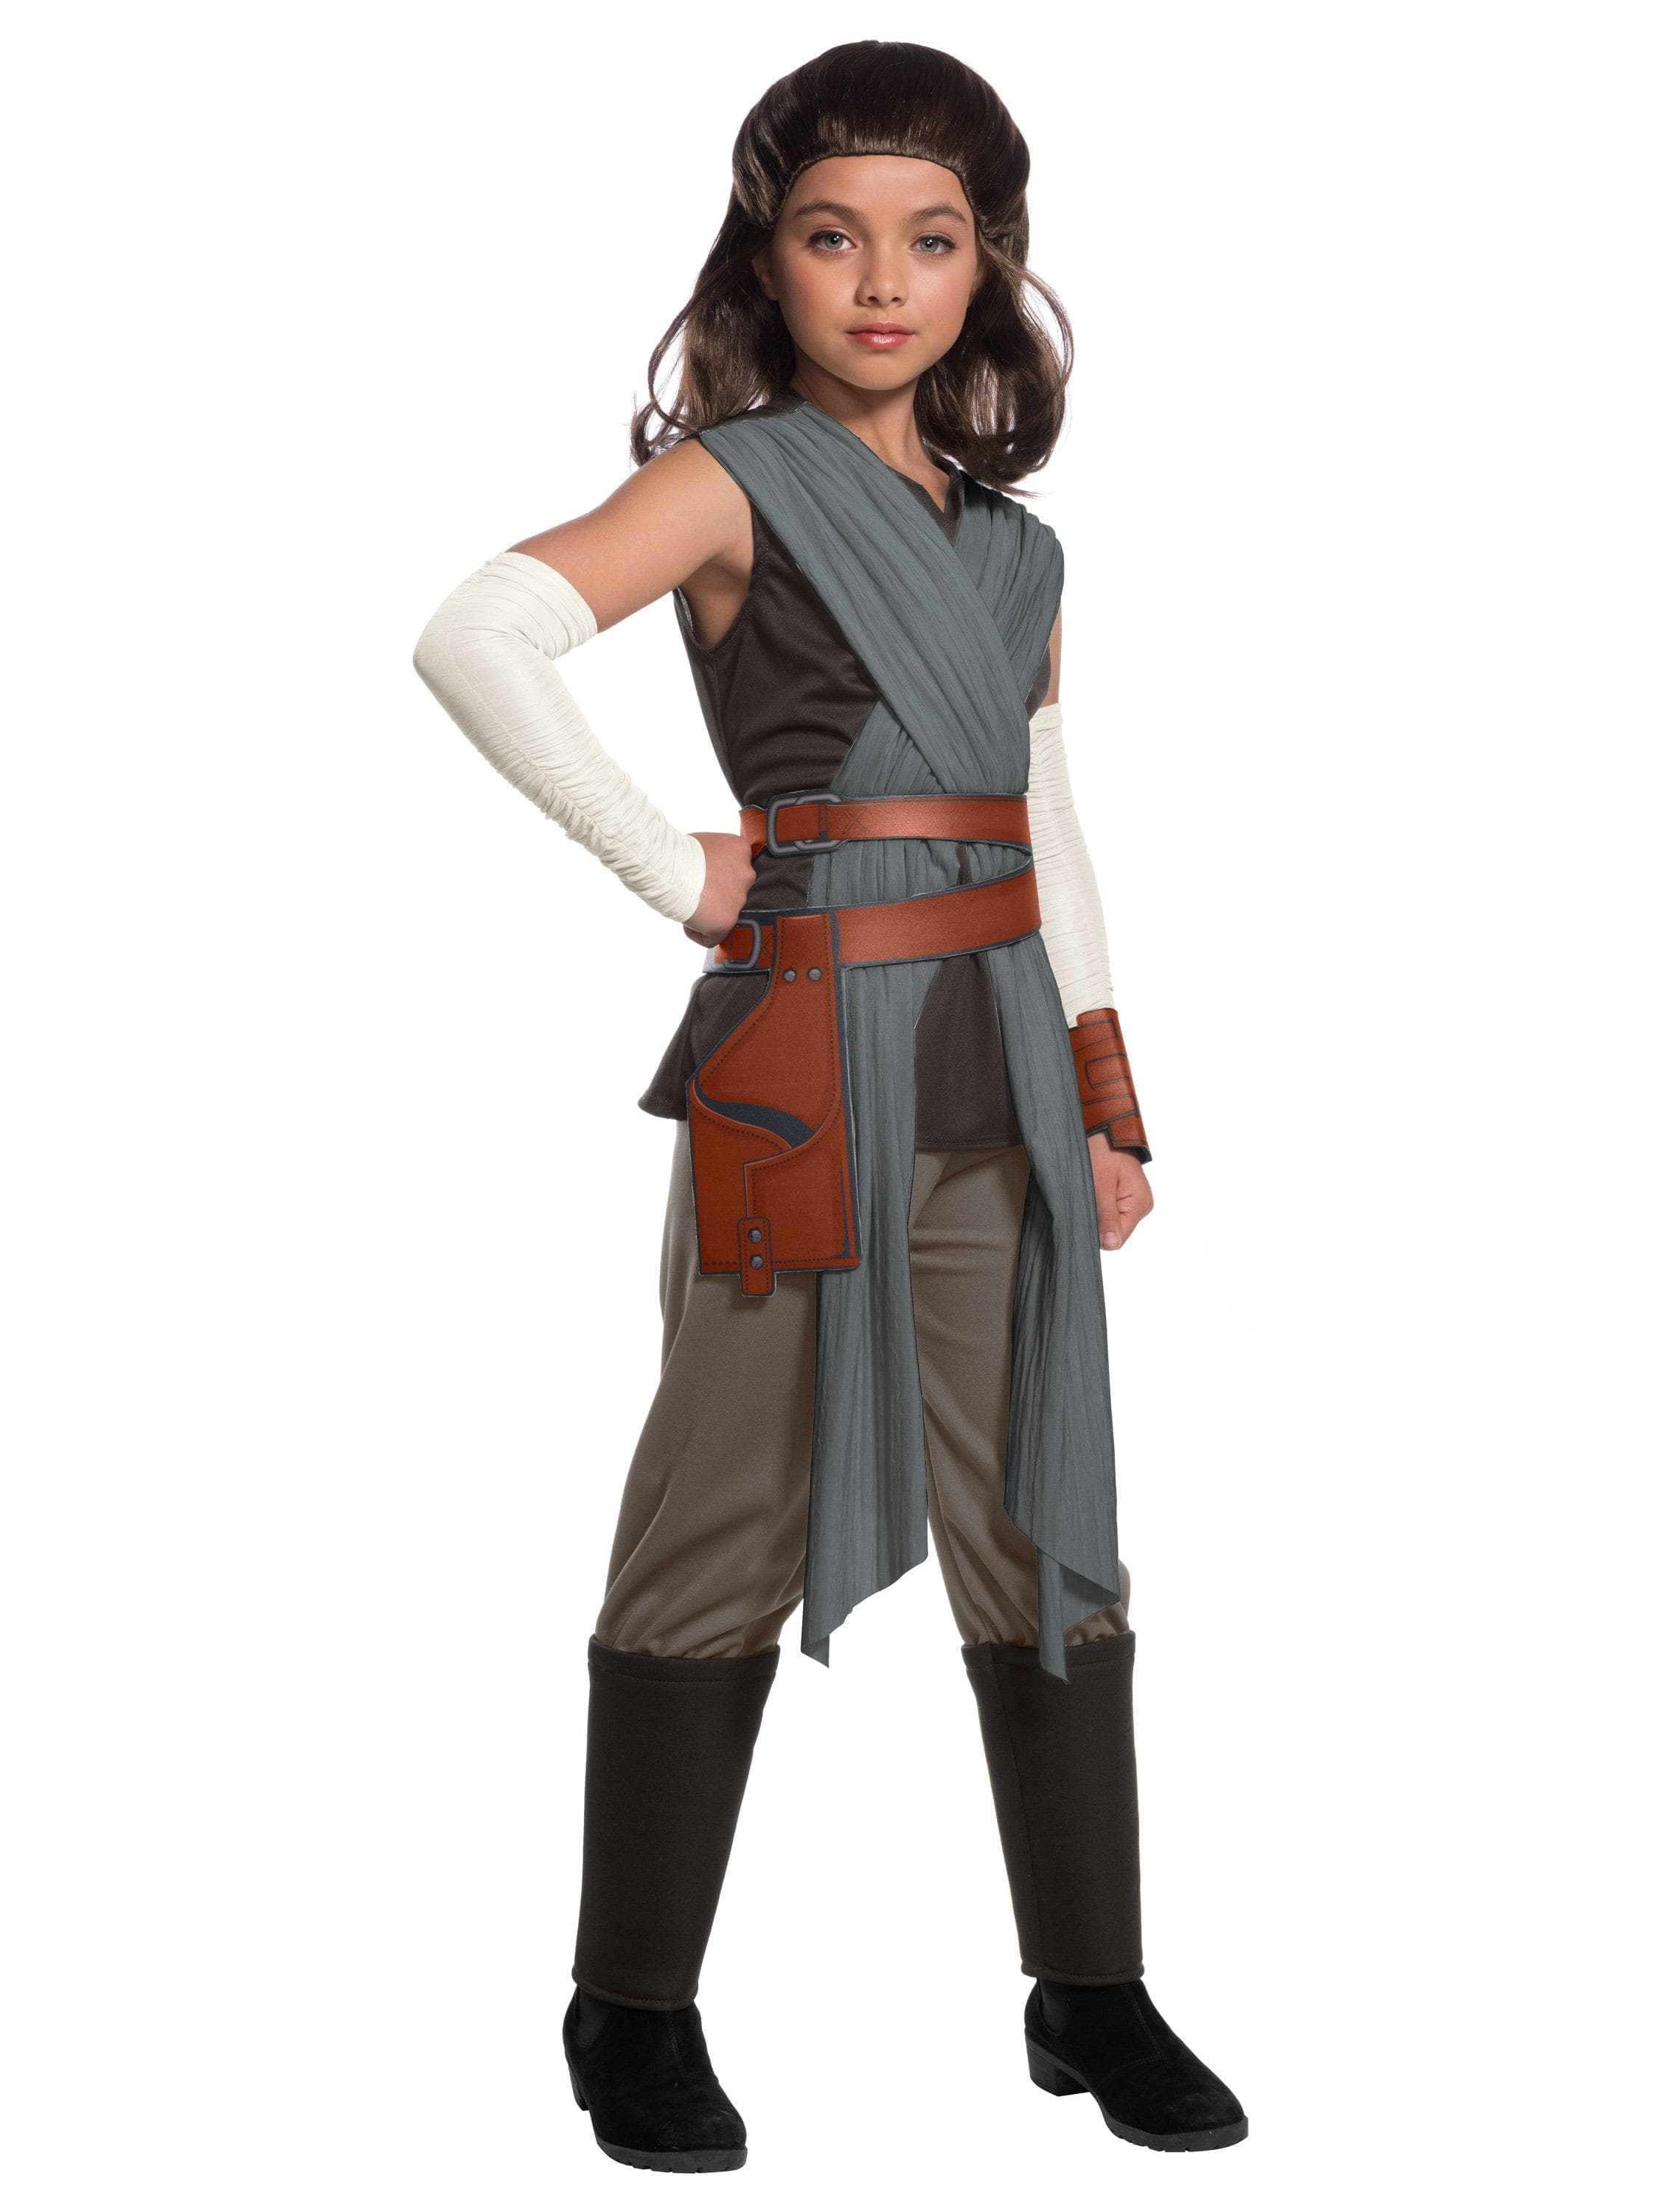 Rey Child Costume - costumes.com